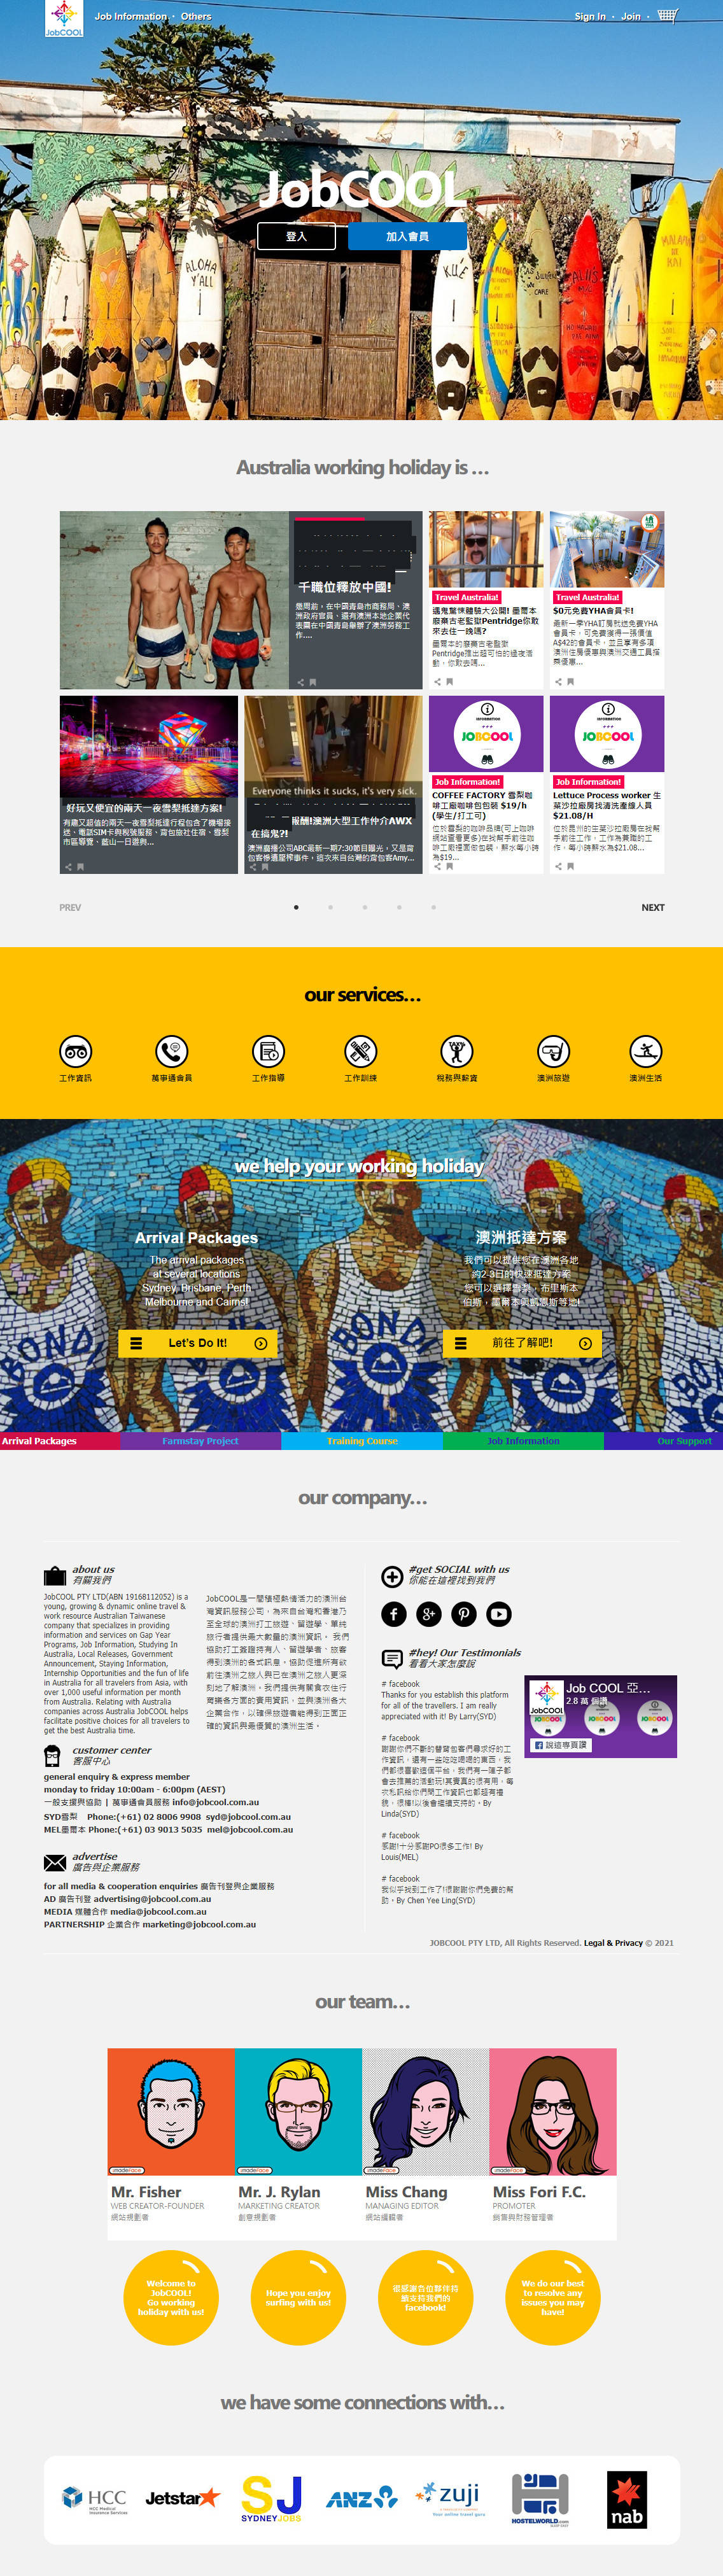 JobCOOL亞洲工作酷 澳洲打工留學網站設計
網站設計